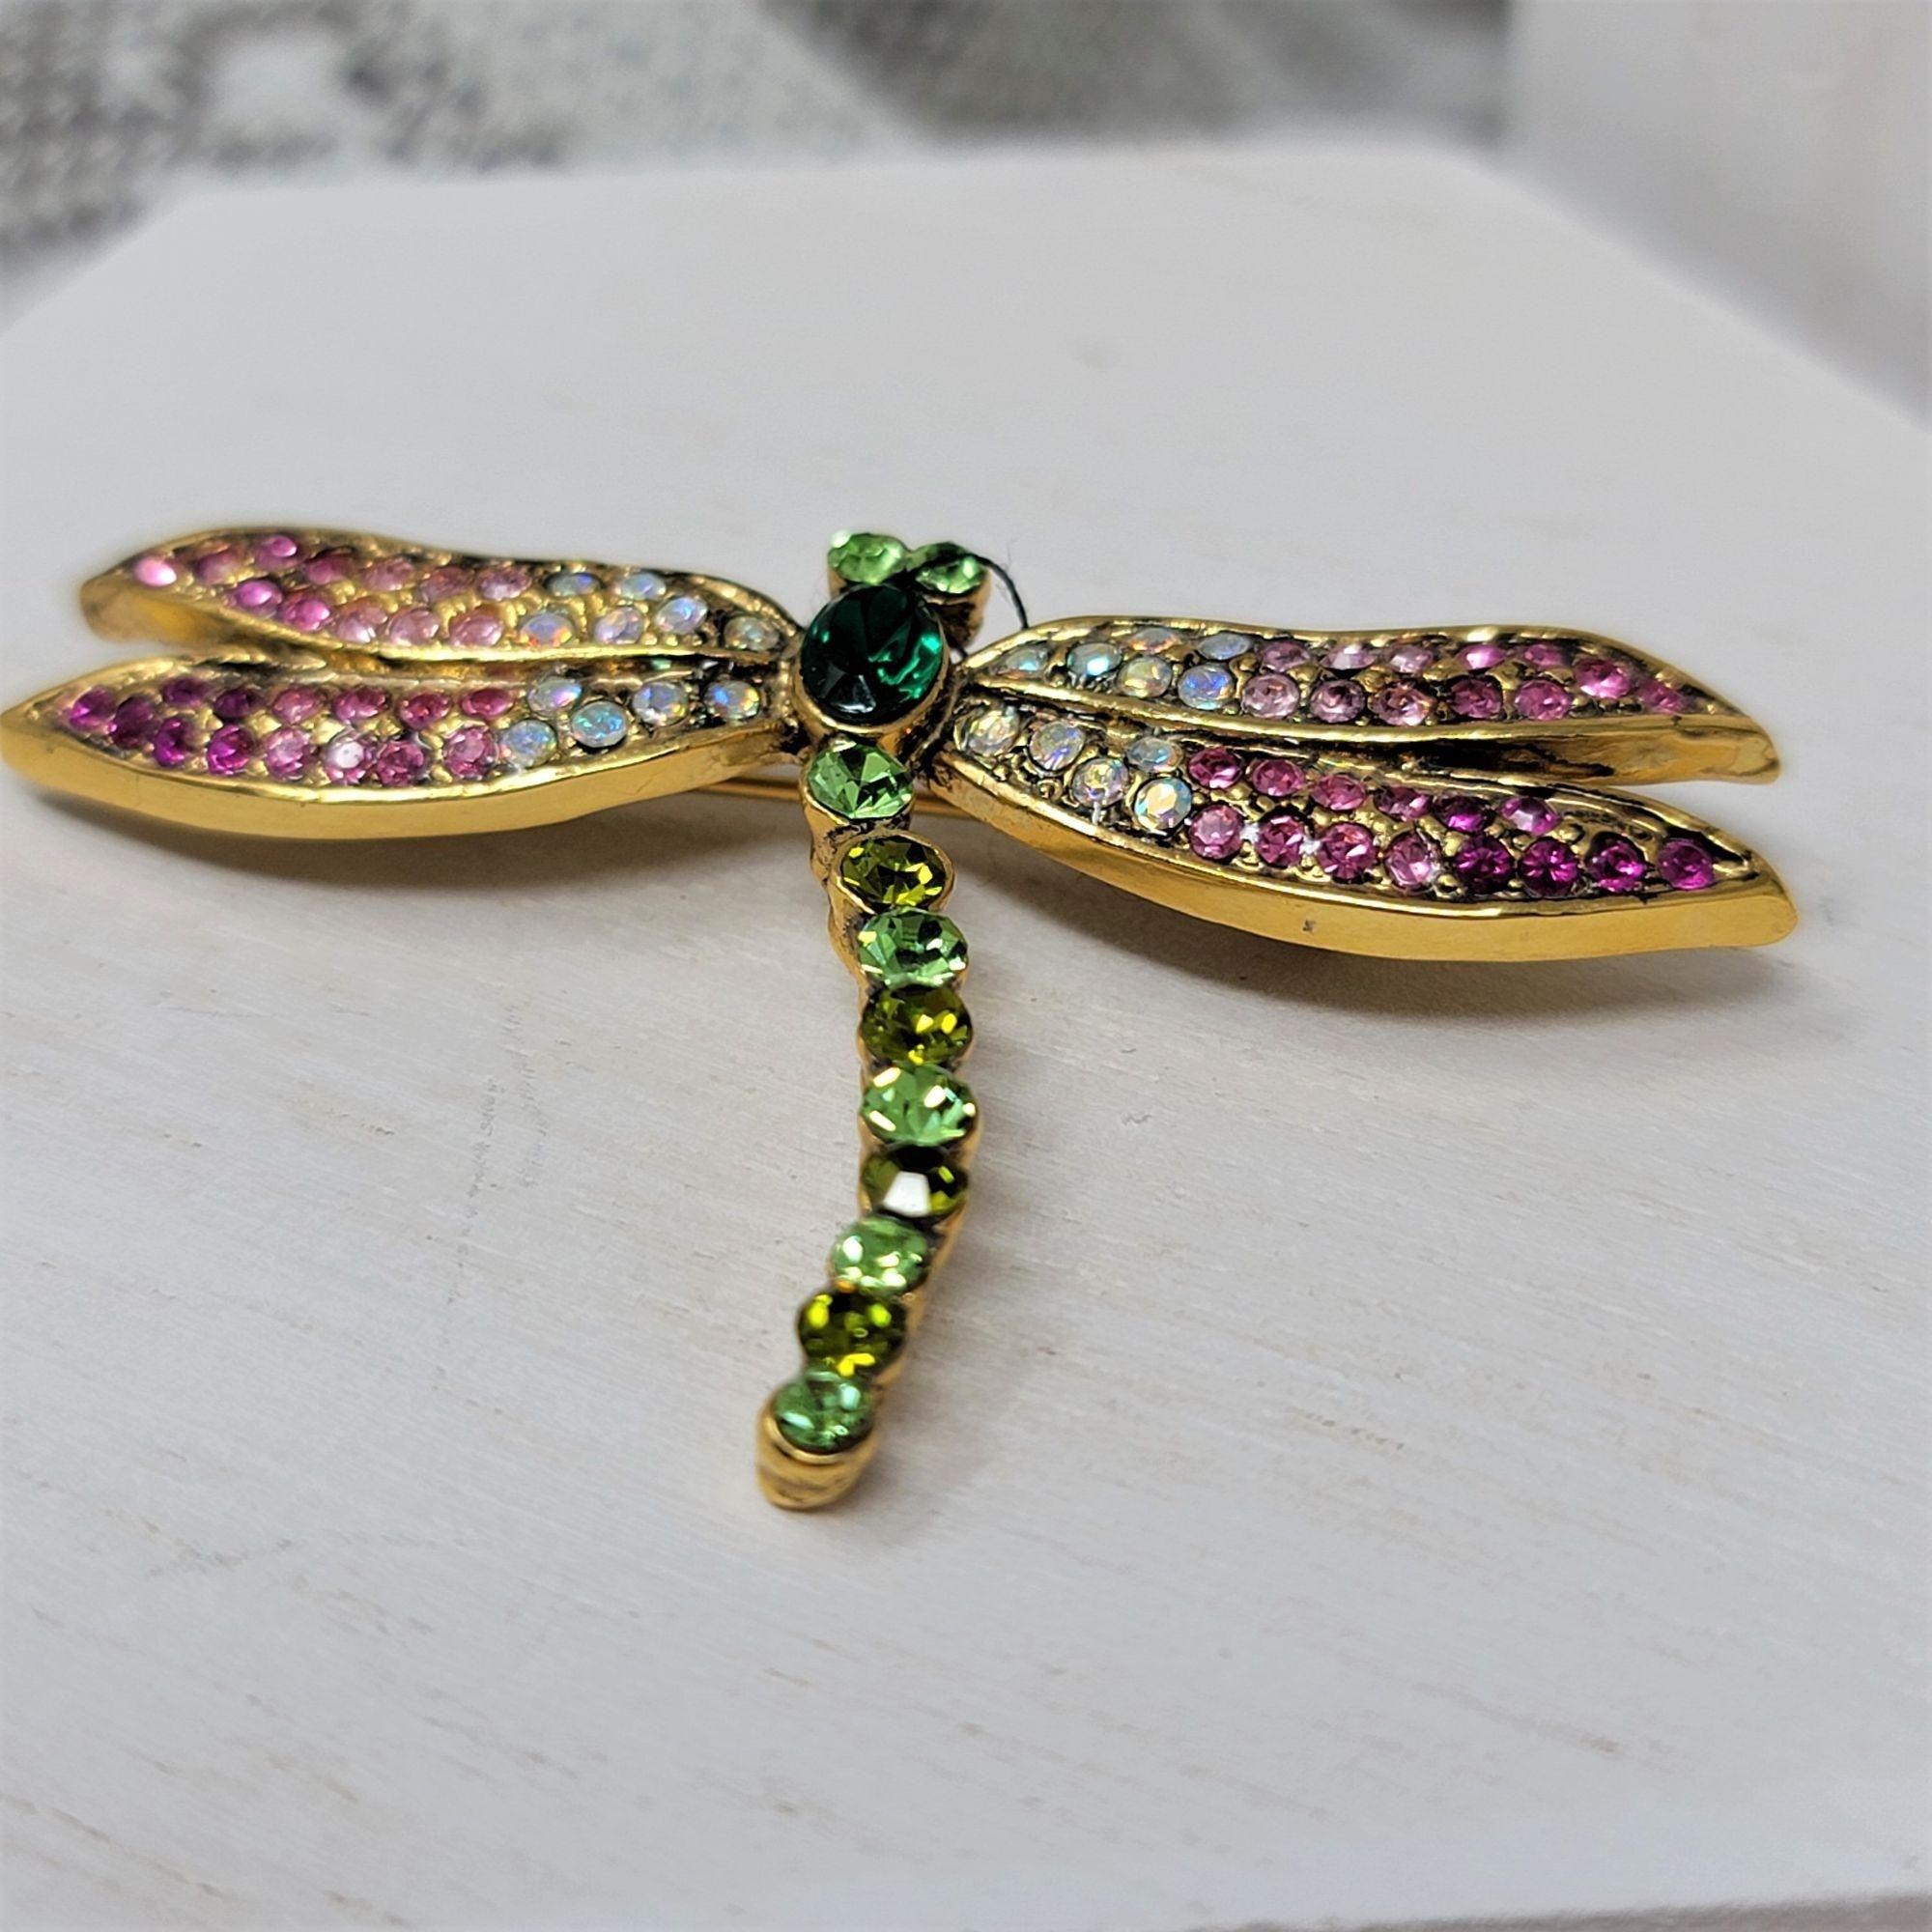 Dragonfly Rhinestone Pin Brooch Pink n Green